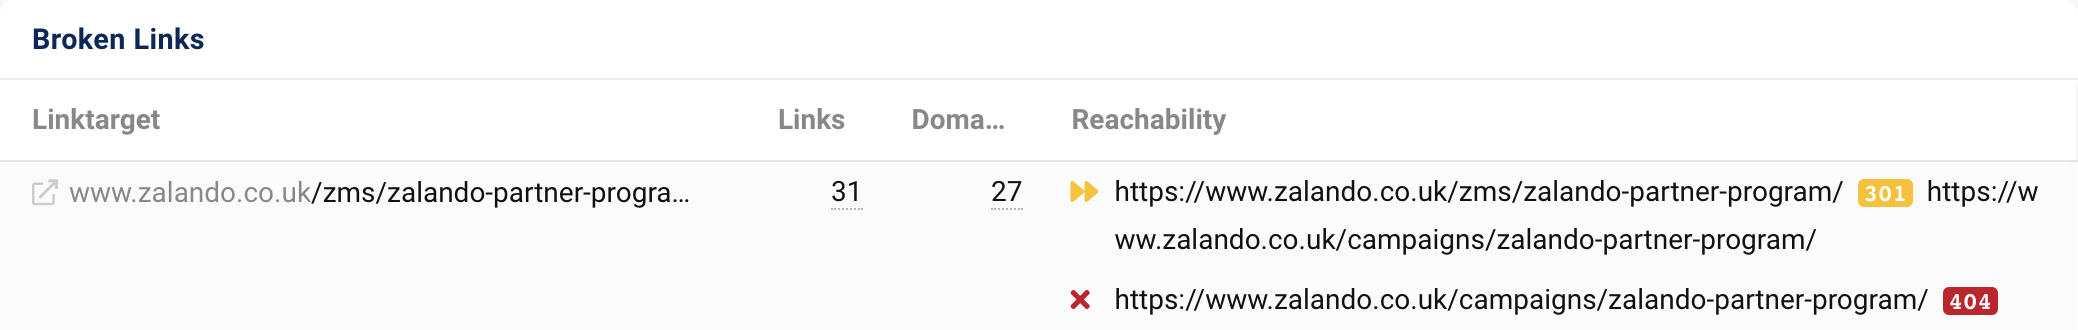 링크 대상 zalando.co.uk/zms/zalando-partner-program/은 27개 도메인에서 31개의 링크를 가져옵니다. 301 리디렉션 후 URL은 404 상태 코드를 출력합니다.